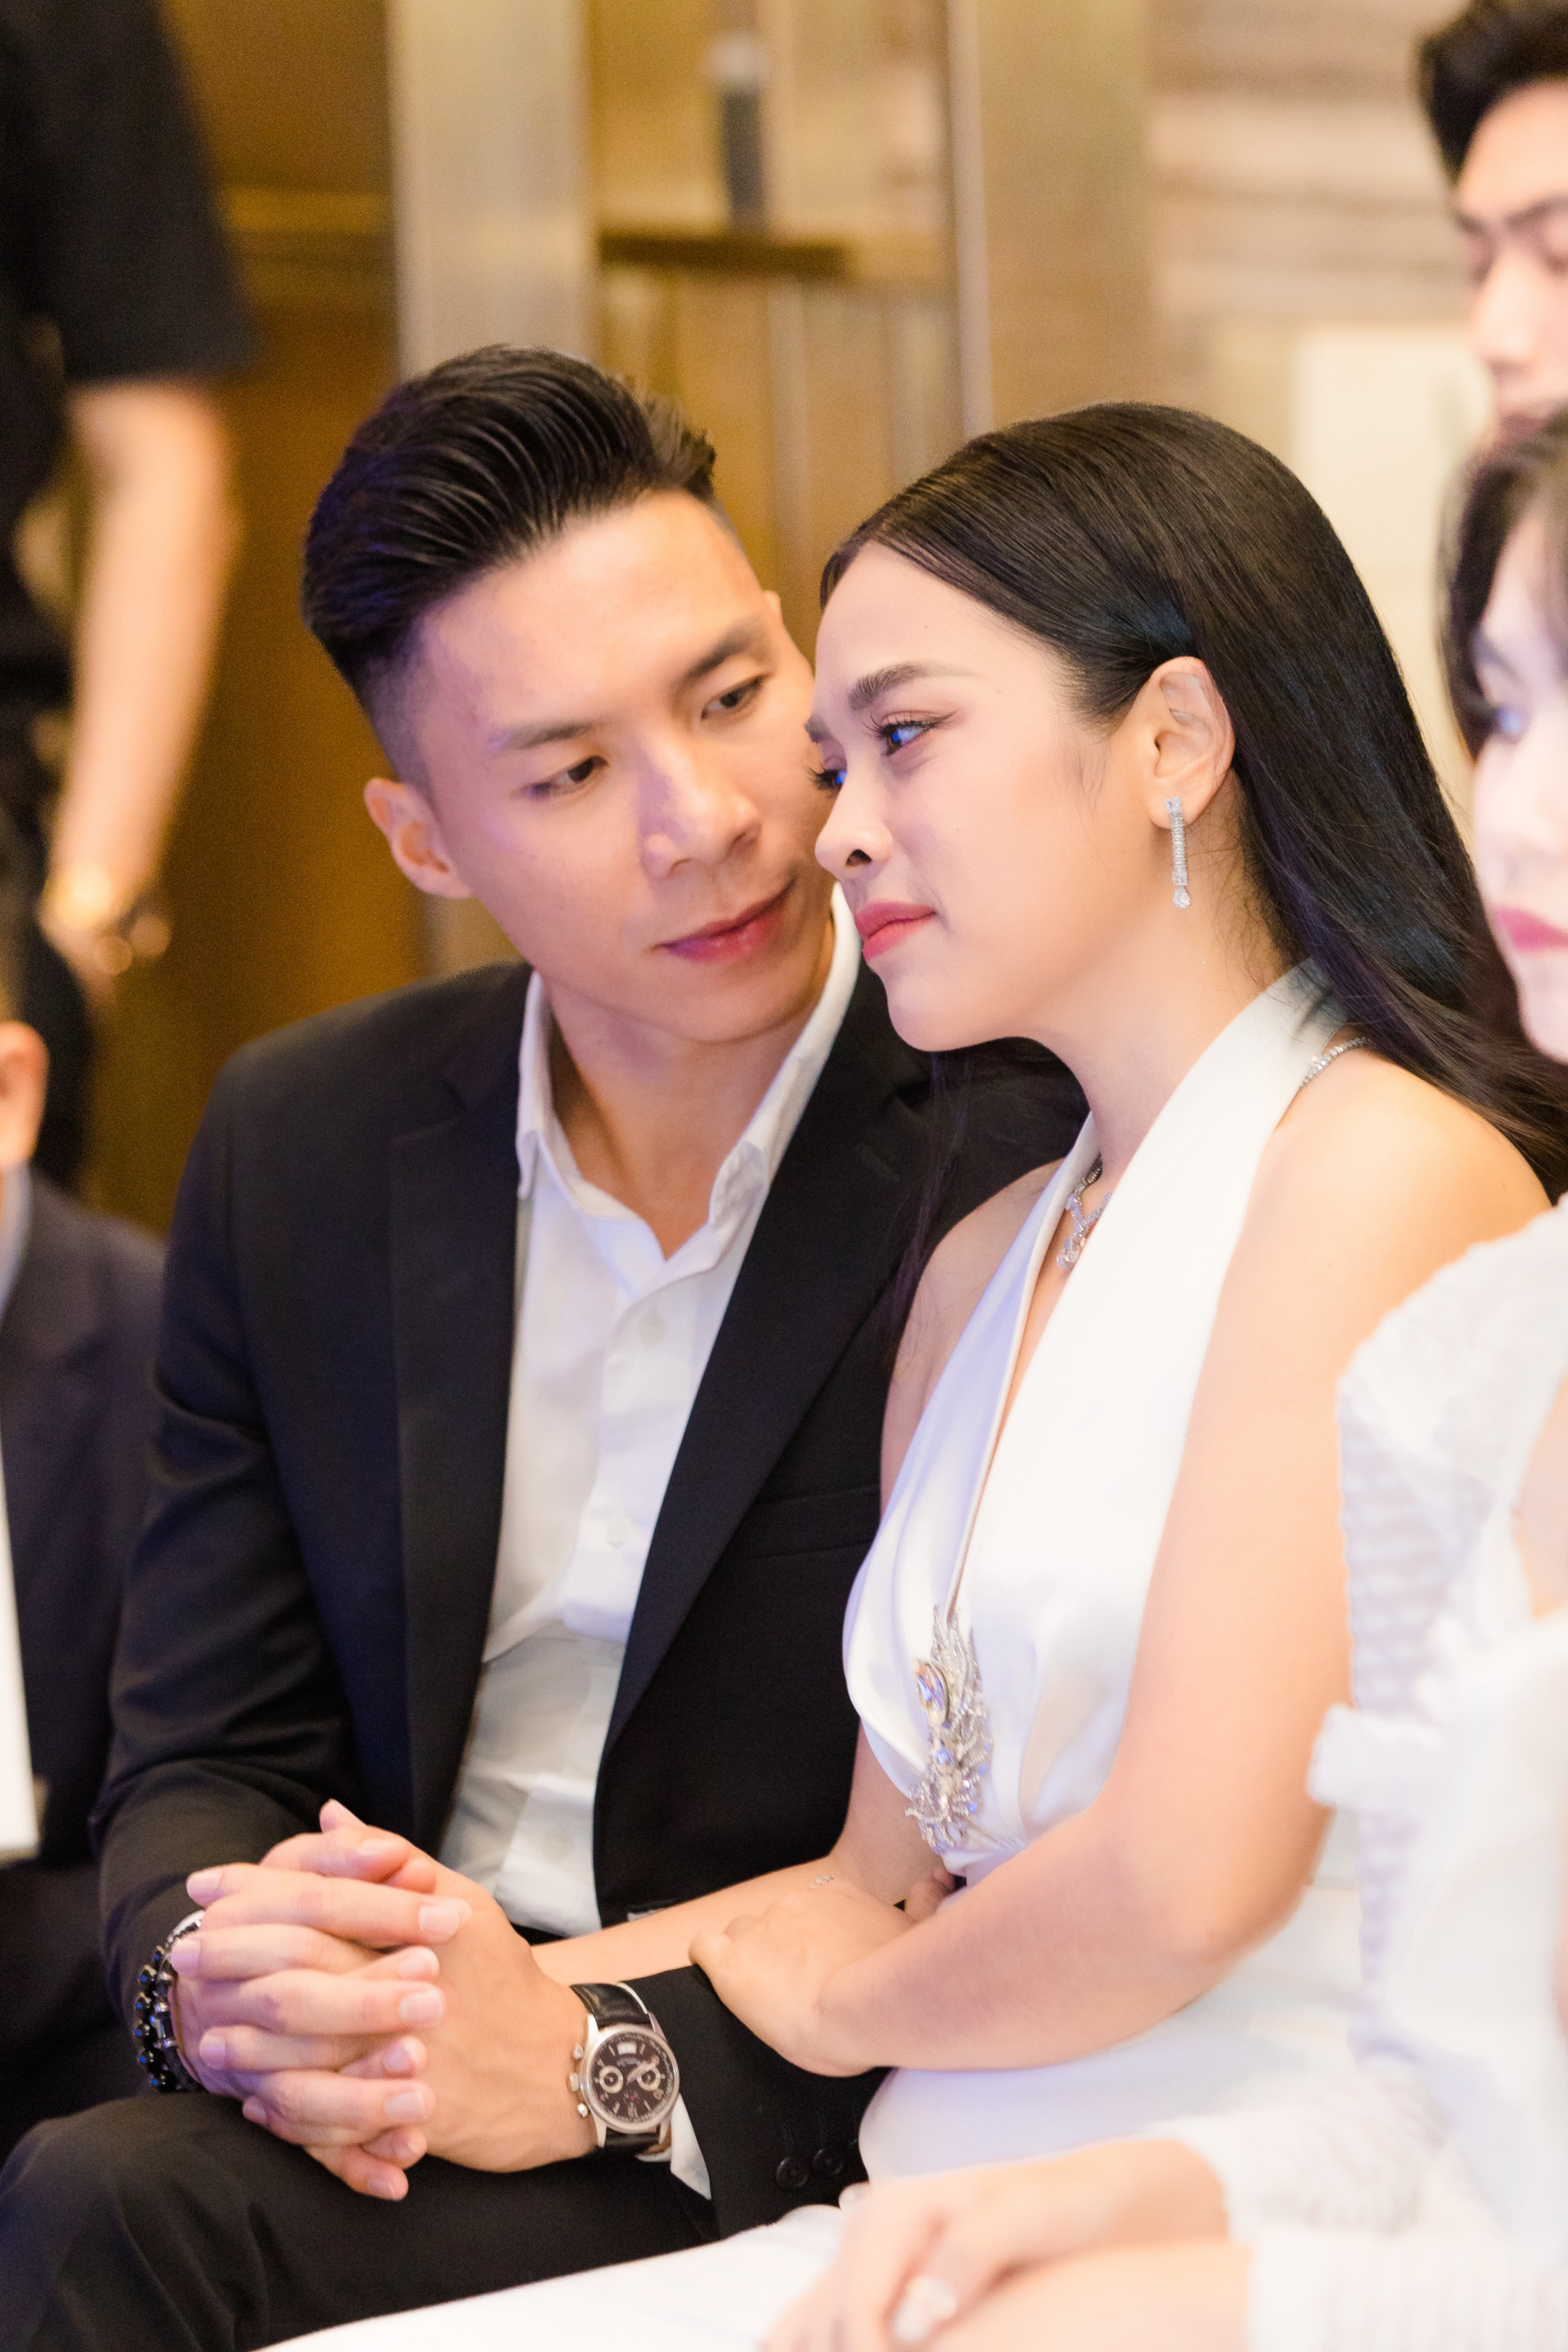 Ái nữ nhà Quyền Linh hiếm hoi dự sự kiện cùng bố, visual cùng chiều cao chuẩn Hoa hậu - ảnh 2